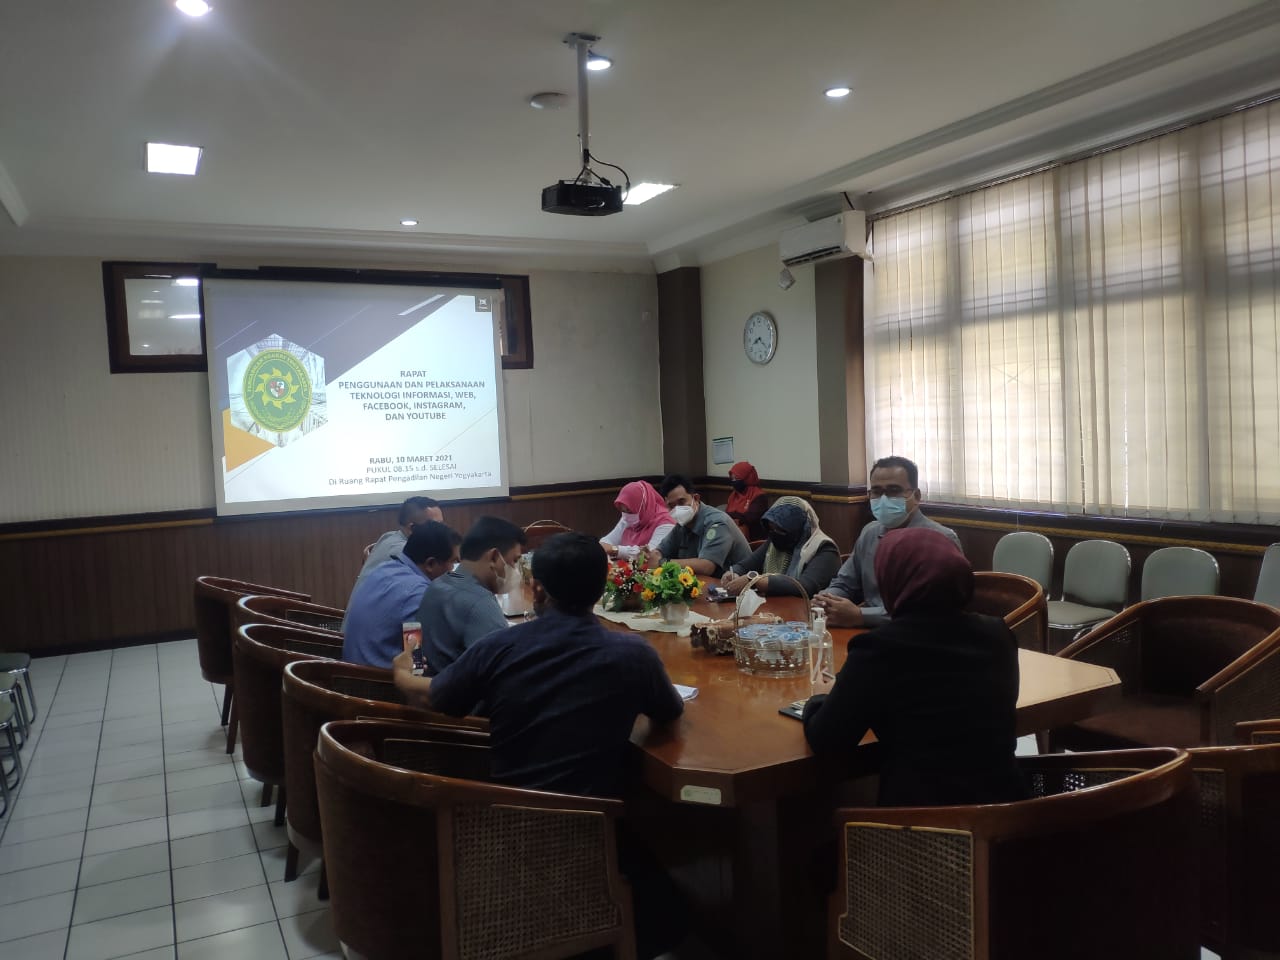 Rapat Penggunaan dan Pelaksanaan Teknologi Informasi, Website dan Media Sosial Pengadilan Negeri Yogyakarta